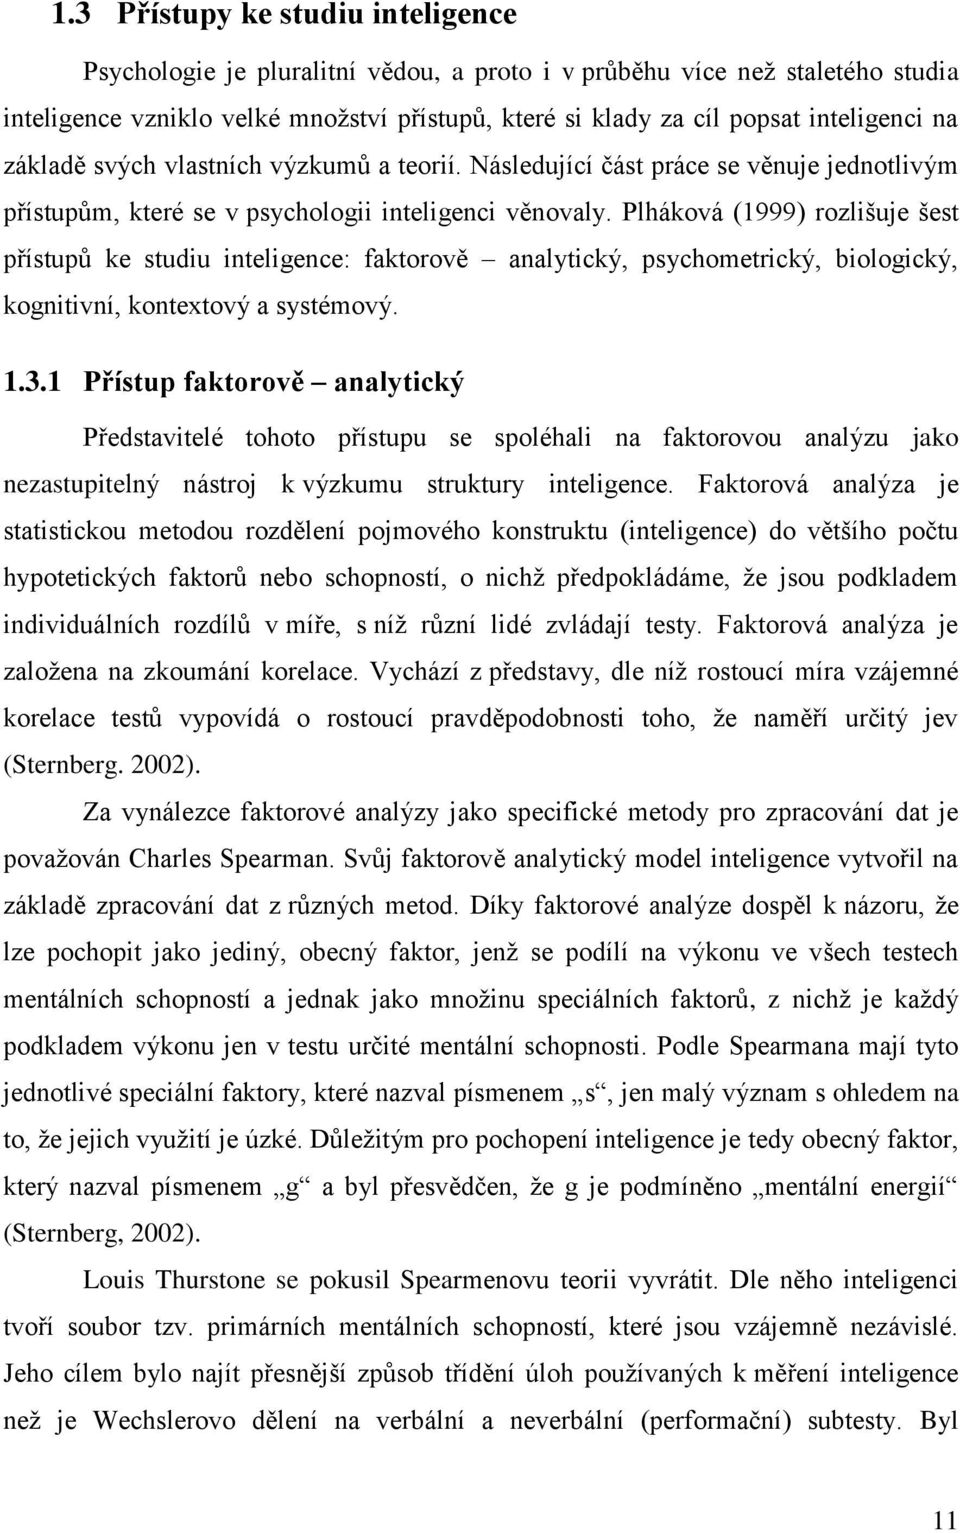 Plháková (1999) rozlišuje šest přístupů ke studiu inteligence: faktorově analytický, psychometrický, biologický, kognitivní, kontextový a systémový. 1.3.